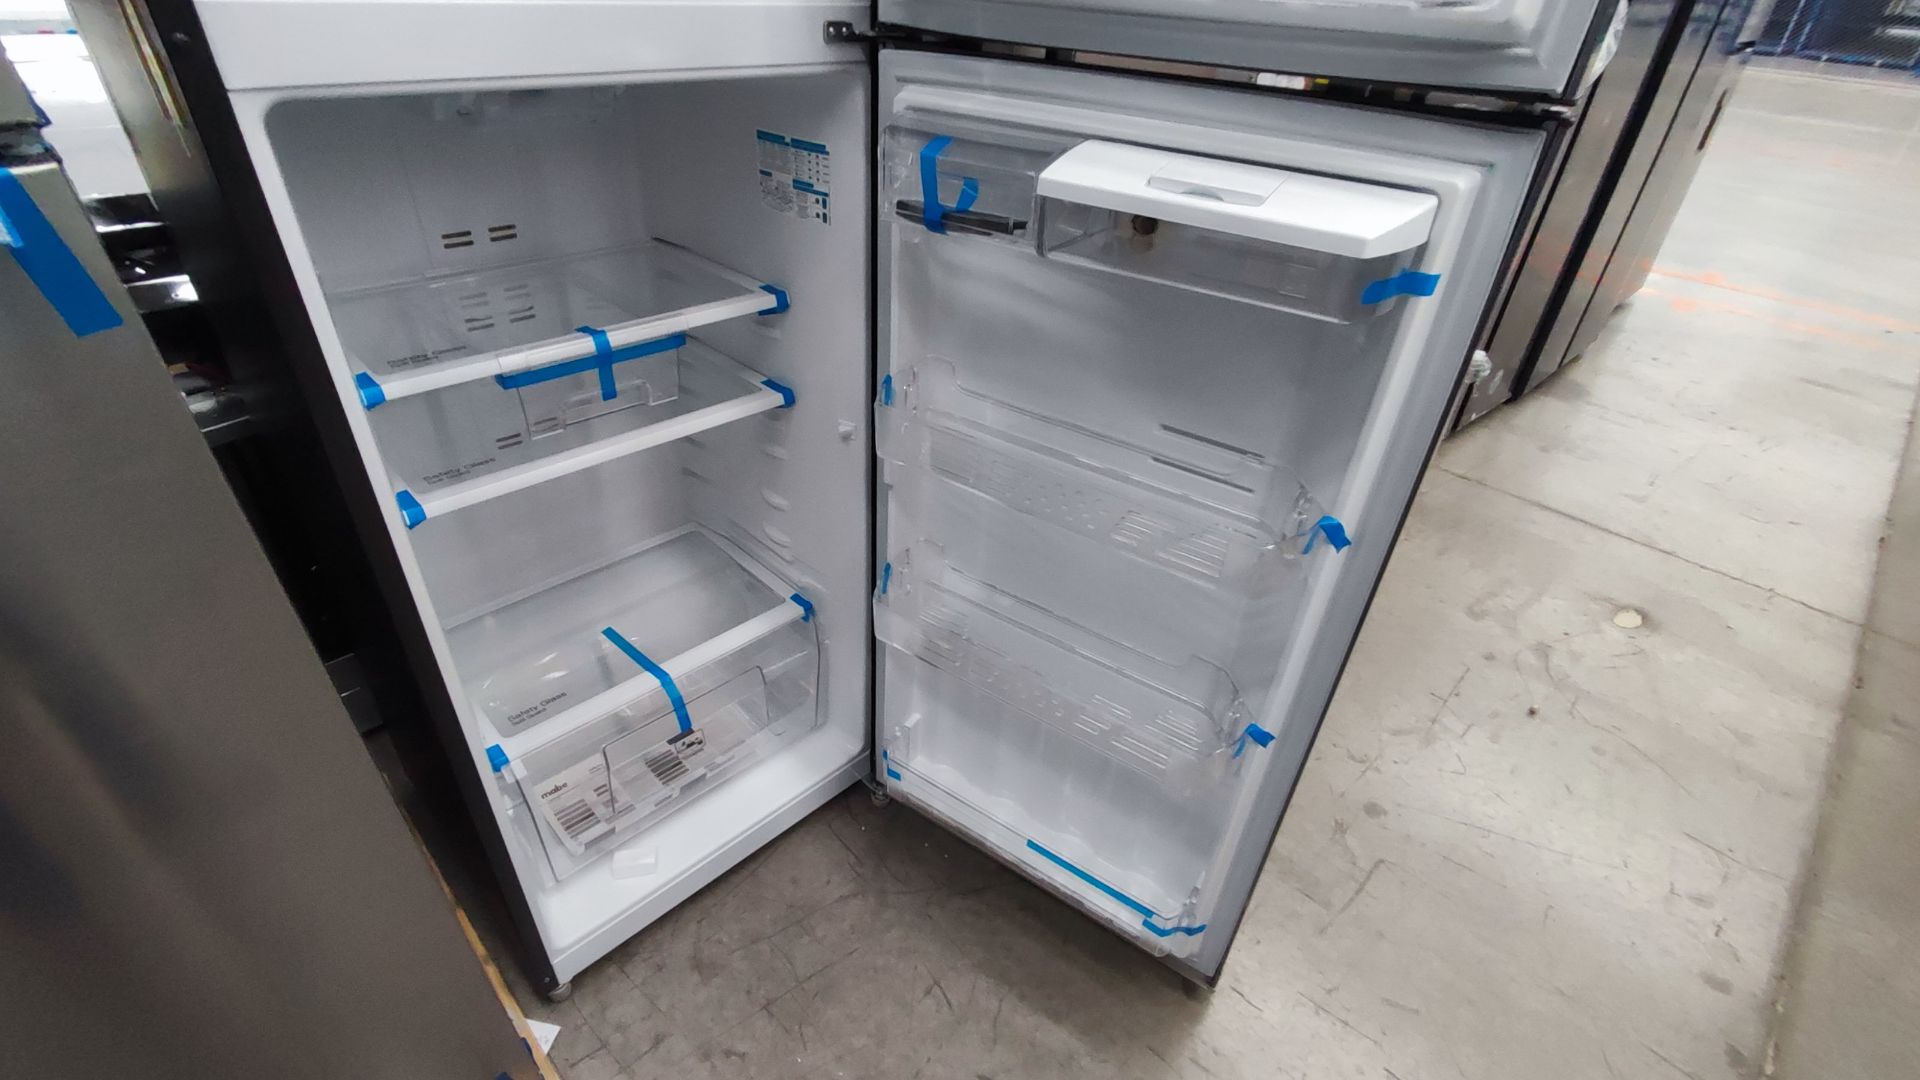 1 Refrigerador Marca Mabe, Modelo RMT400RY, Serie 2111B418085, Color Gris Detalles Estéticos. Favor - Image 11 of 12